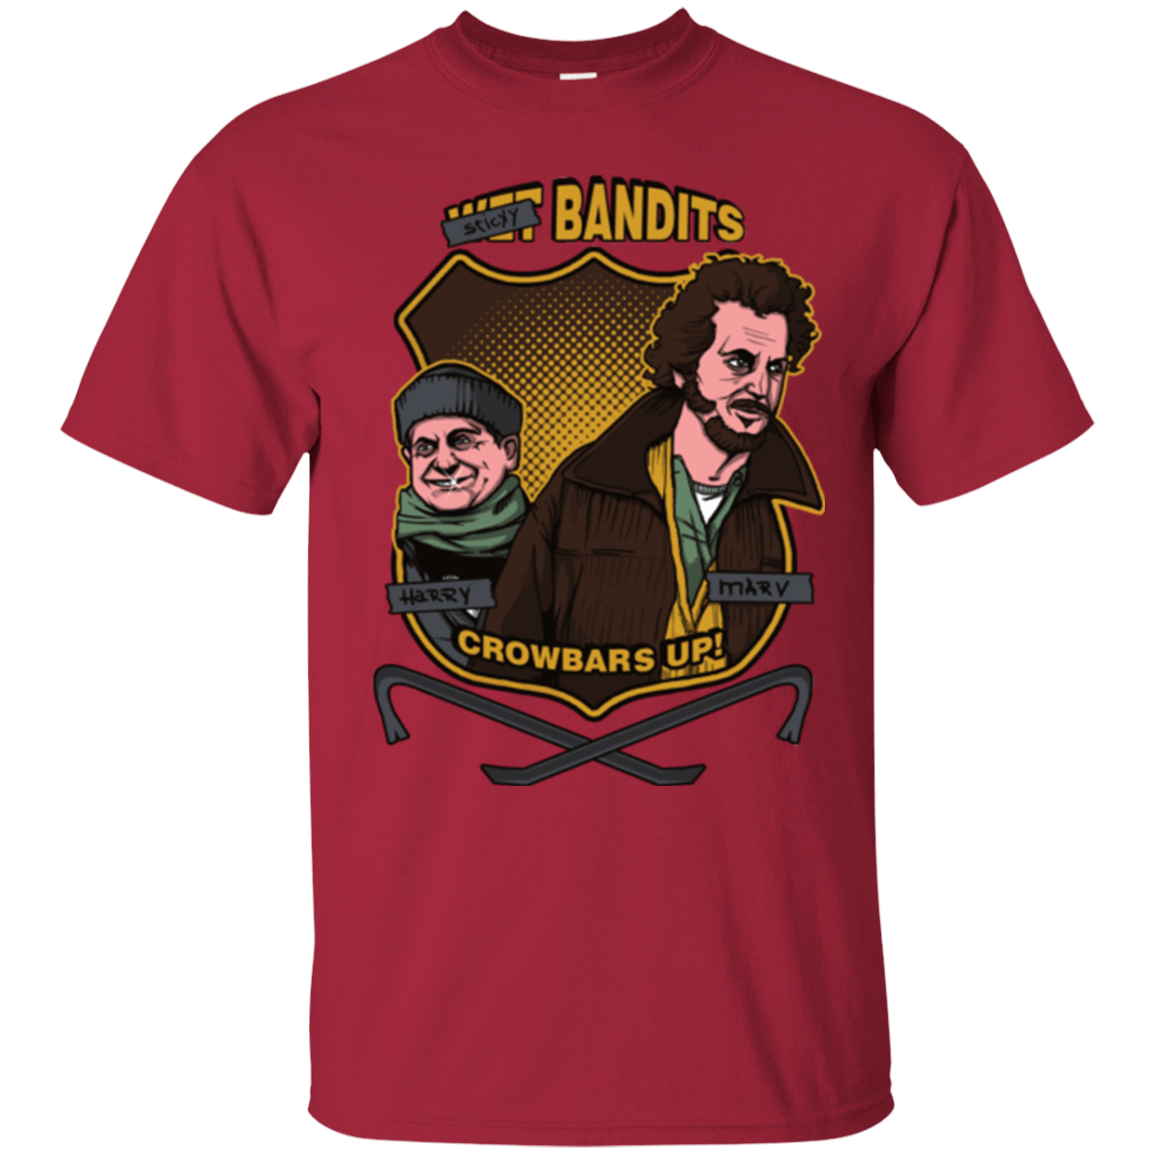 T-Shirts Cardinal / Small Sticky Bandits T-Shirt